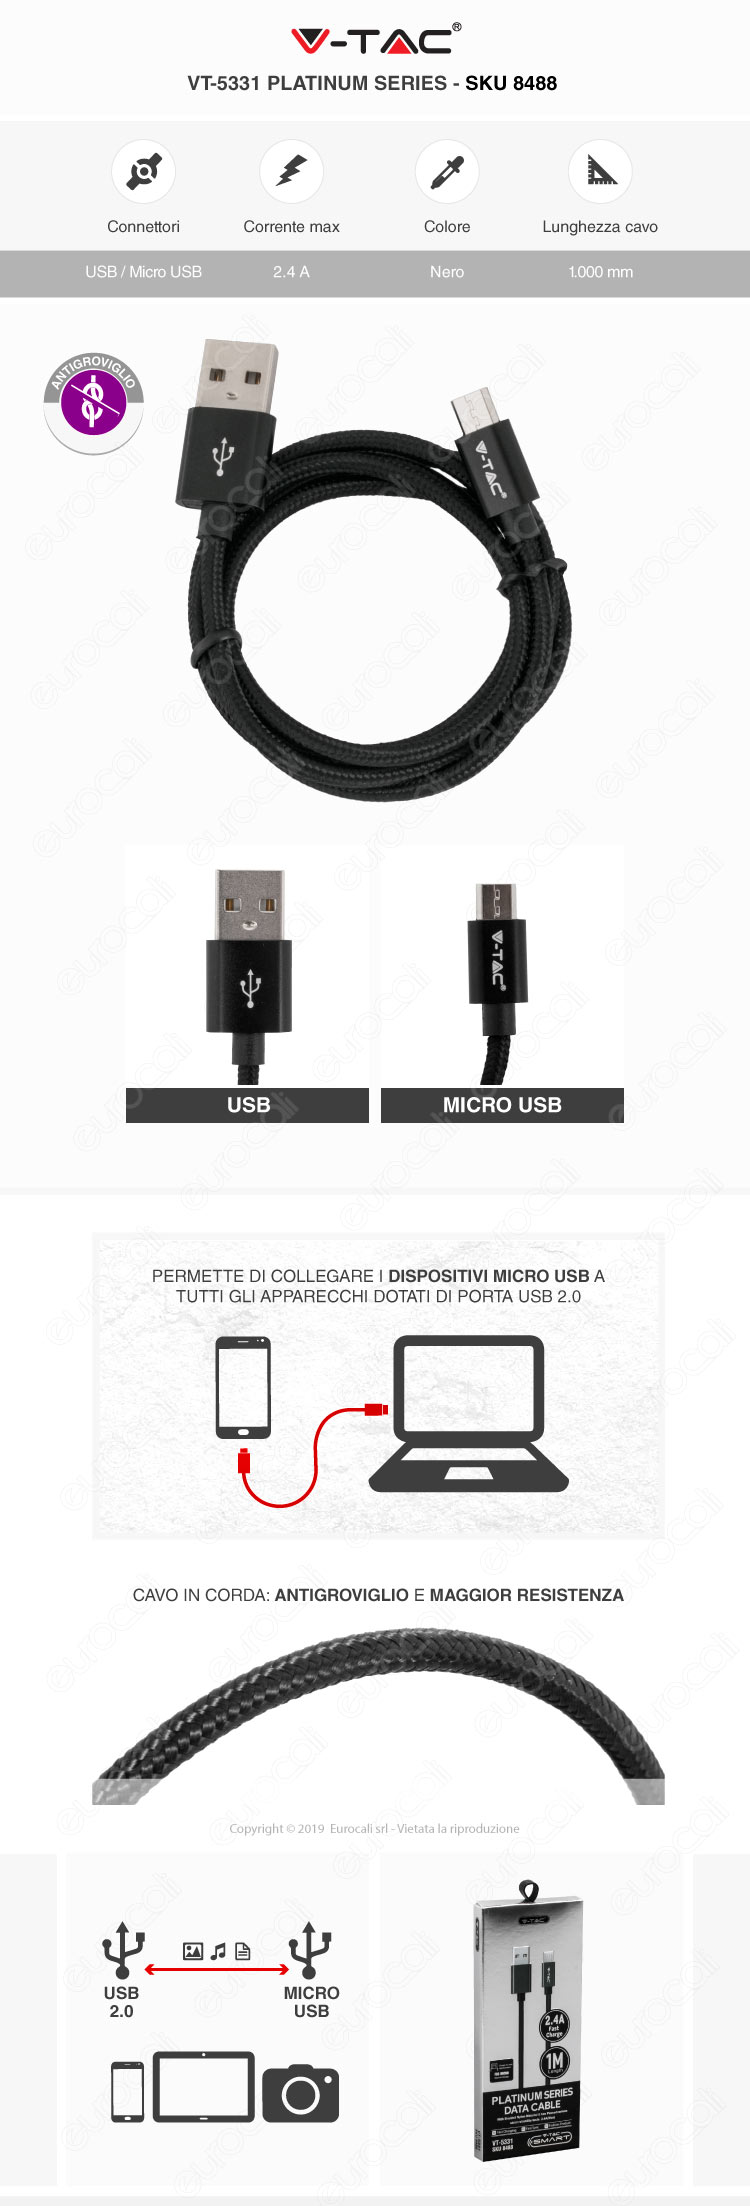 V-Tac VT-5331 platinum series USB Data Cable micro usb Cavo in corda Colore Nero 1m